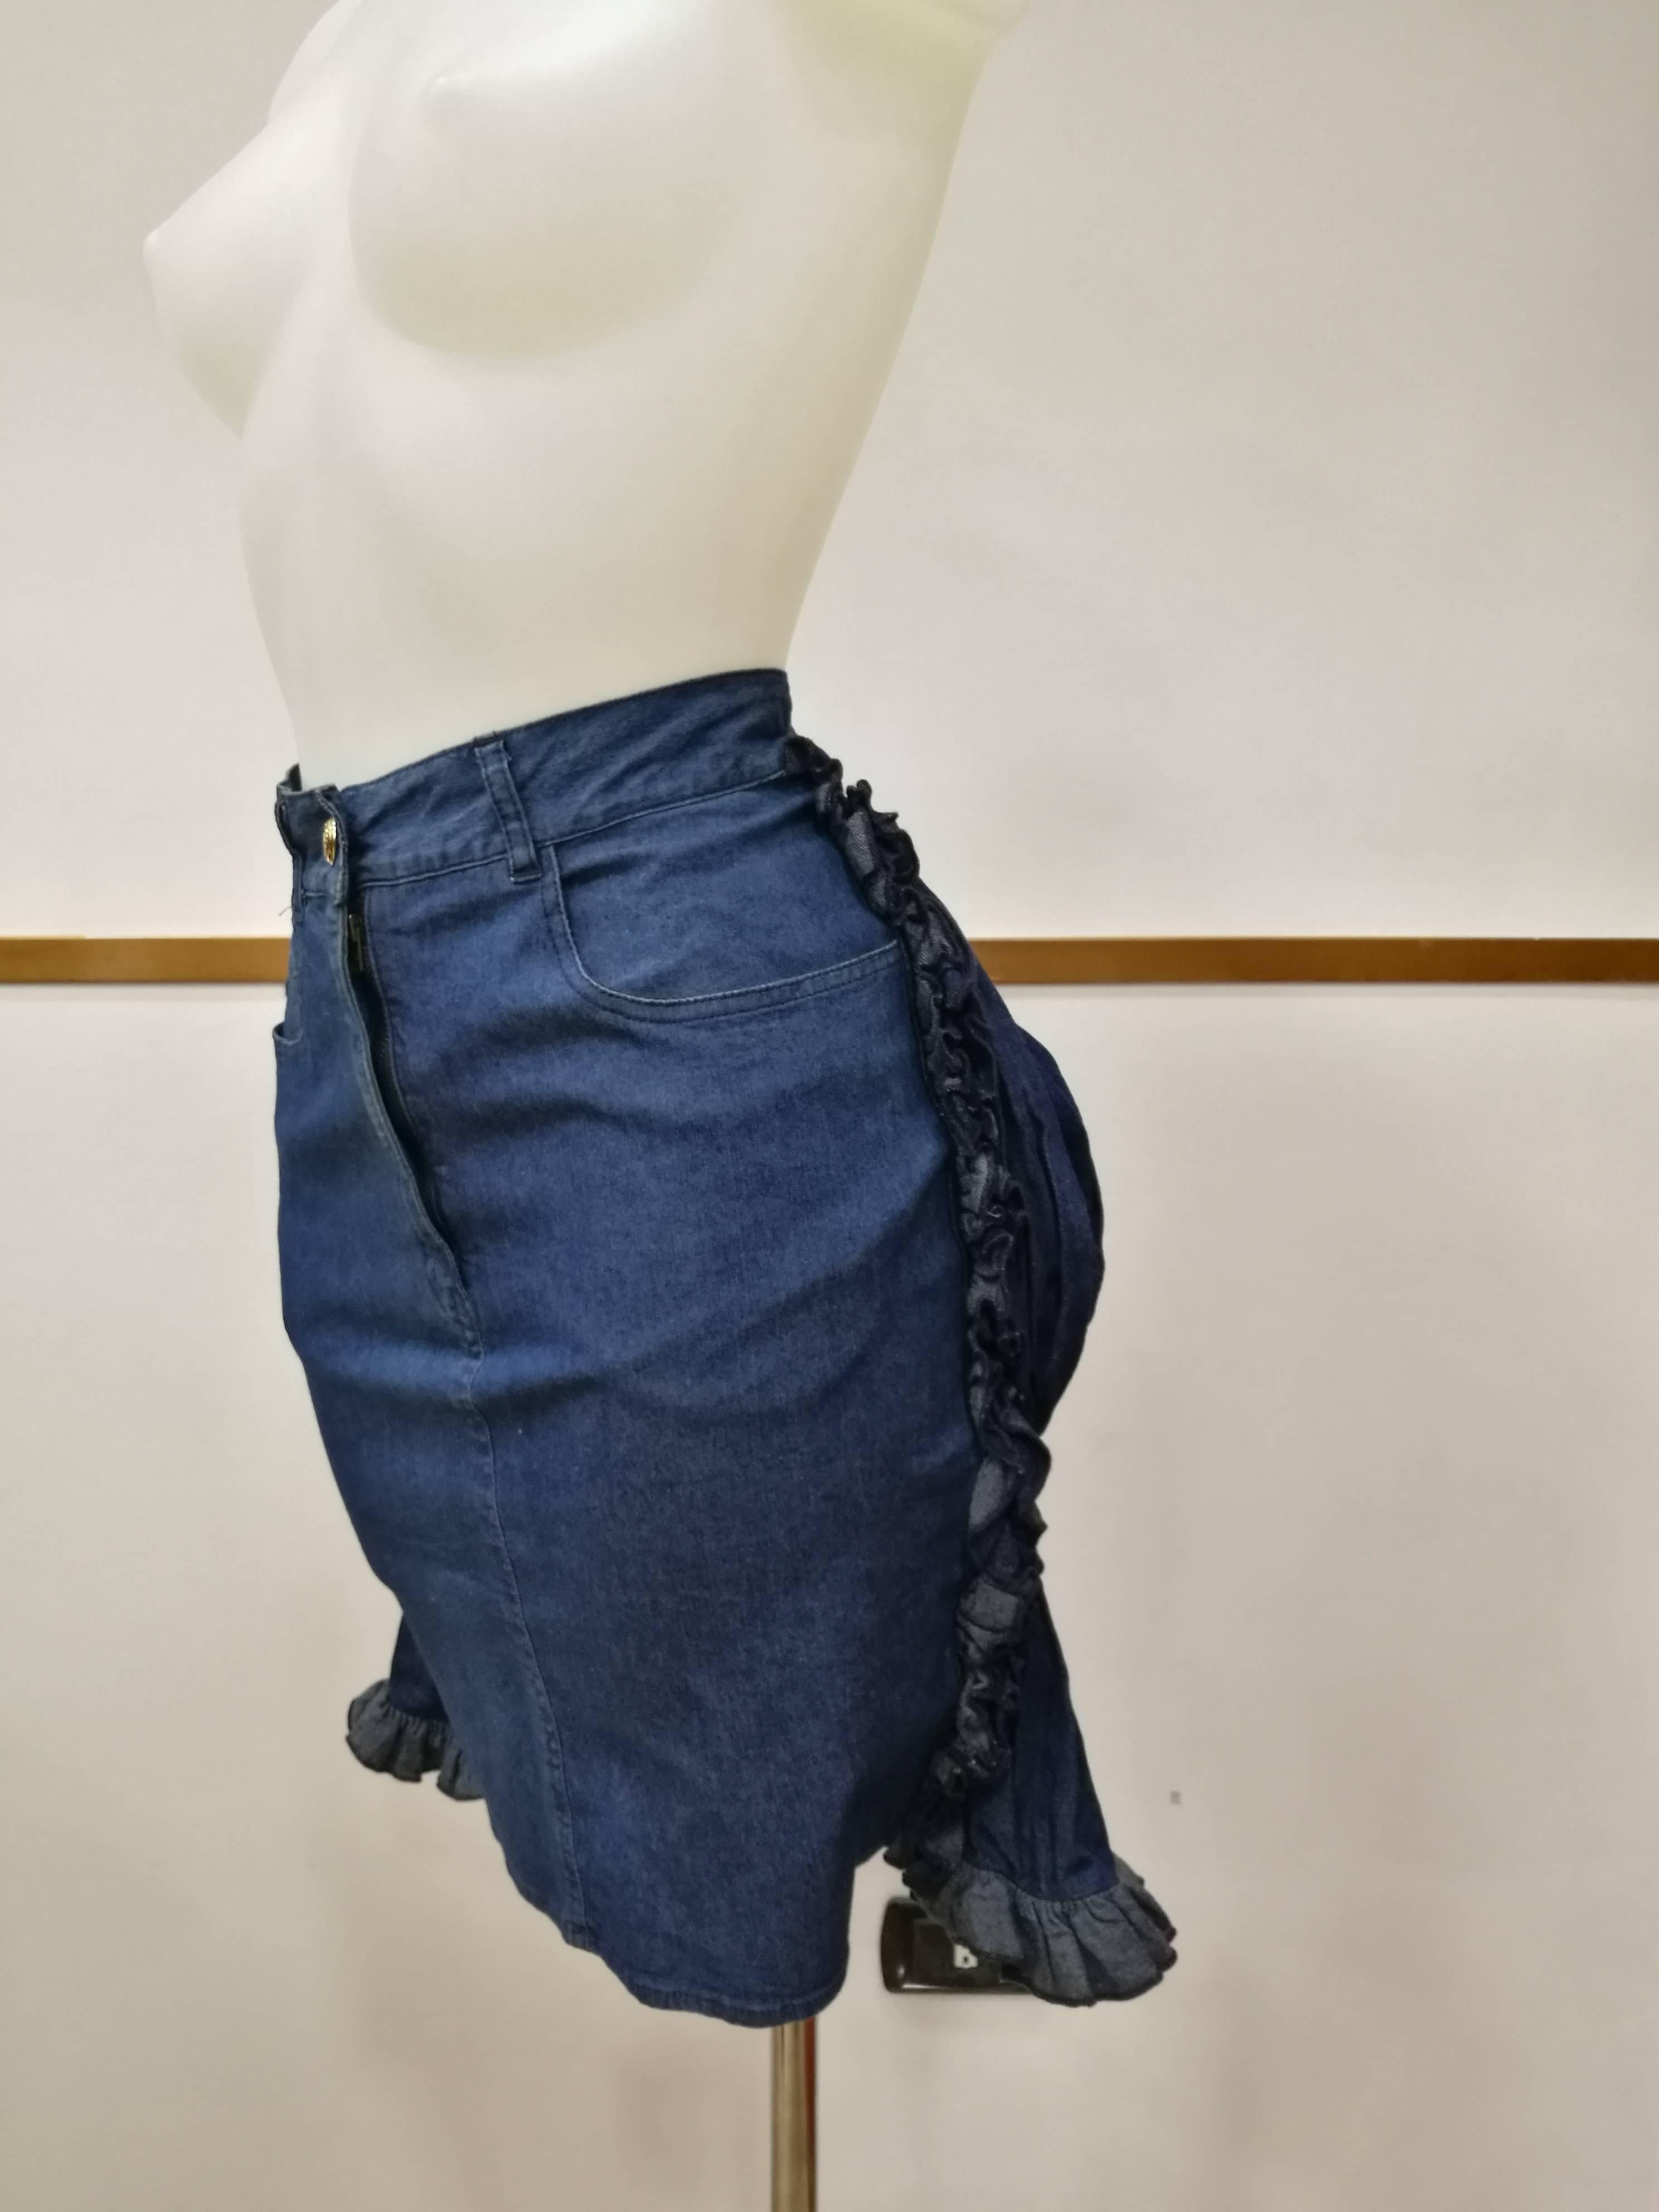 1990er Jahre Ikonischer Moschino Faux-Cul Denim-Minirock aus Denim

Moschino Jeans Iconic Rock völlig in Italien in italienischer Größe Bereich 42 gemacht

Zusammensetzung: Baumwolle , Elastan

